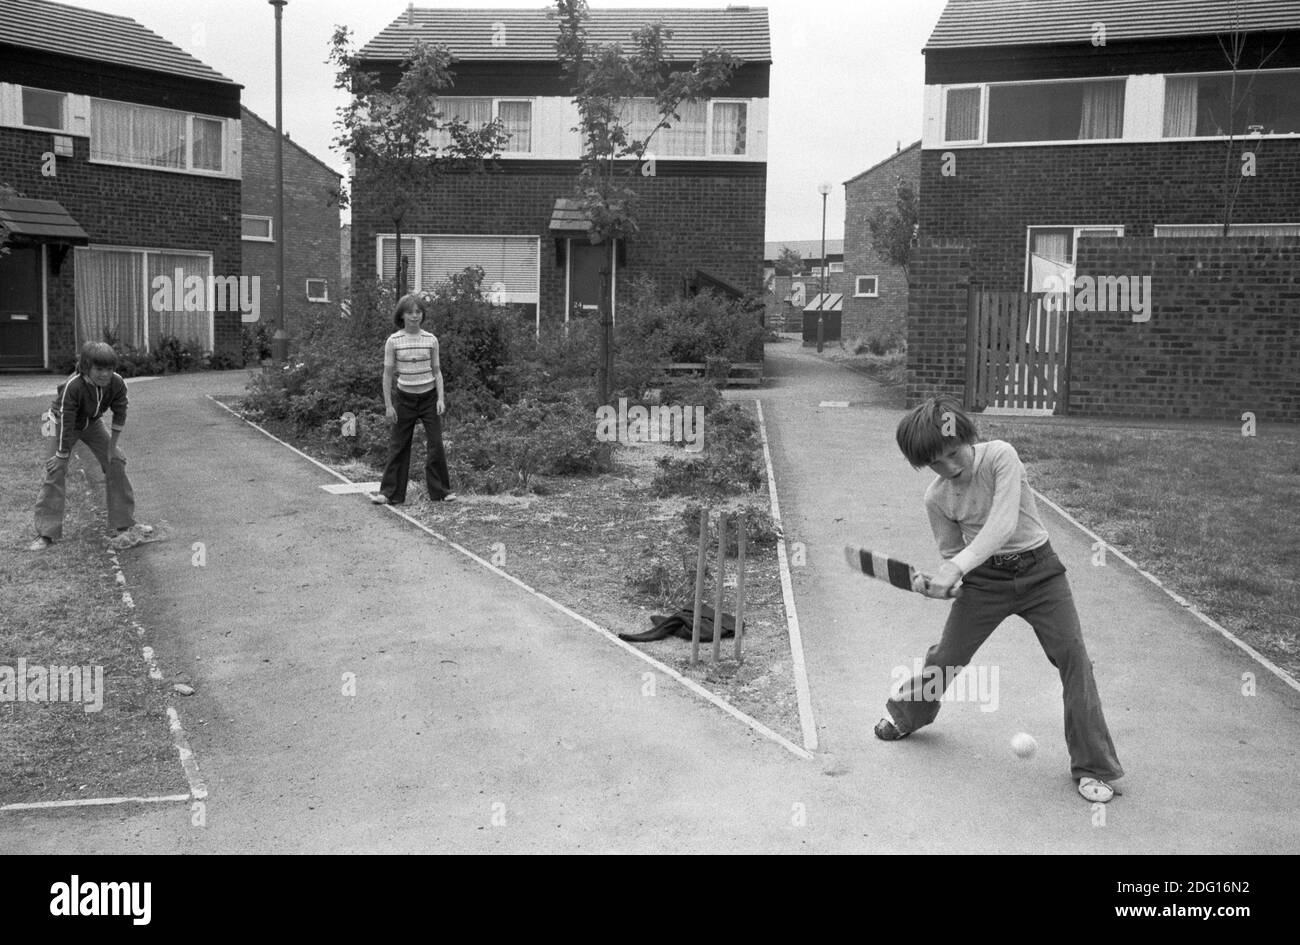 70er Jahre England Kinder spielen Cricket draußen in einer verkehrsfreien Fußgängerwege. Jungen und ein Mädchen, die in diesem vor kurzem gebauten modernen Wohnbau leben es eine neue Stadt 1977 UK HOMER SYKES. Stockfoto